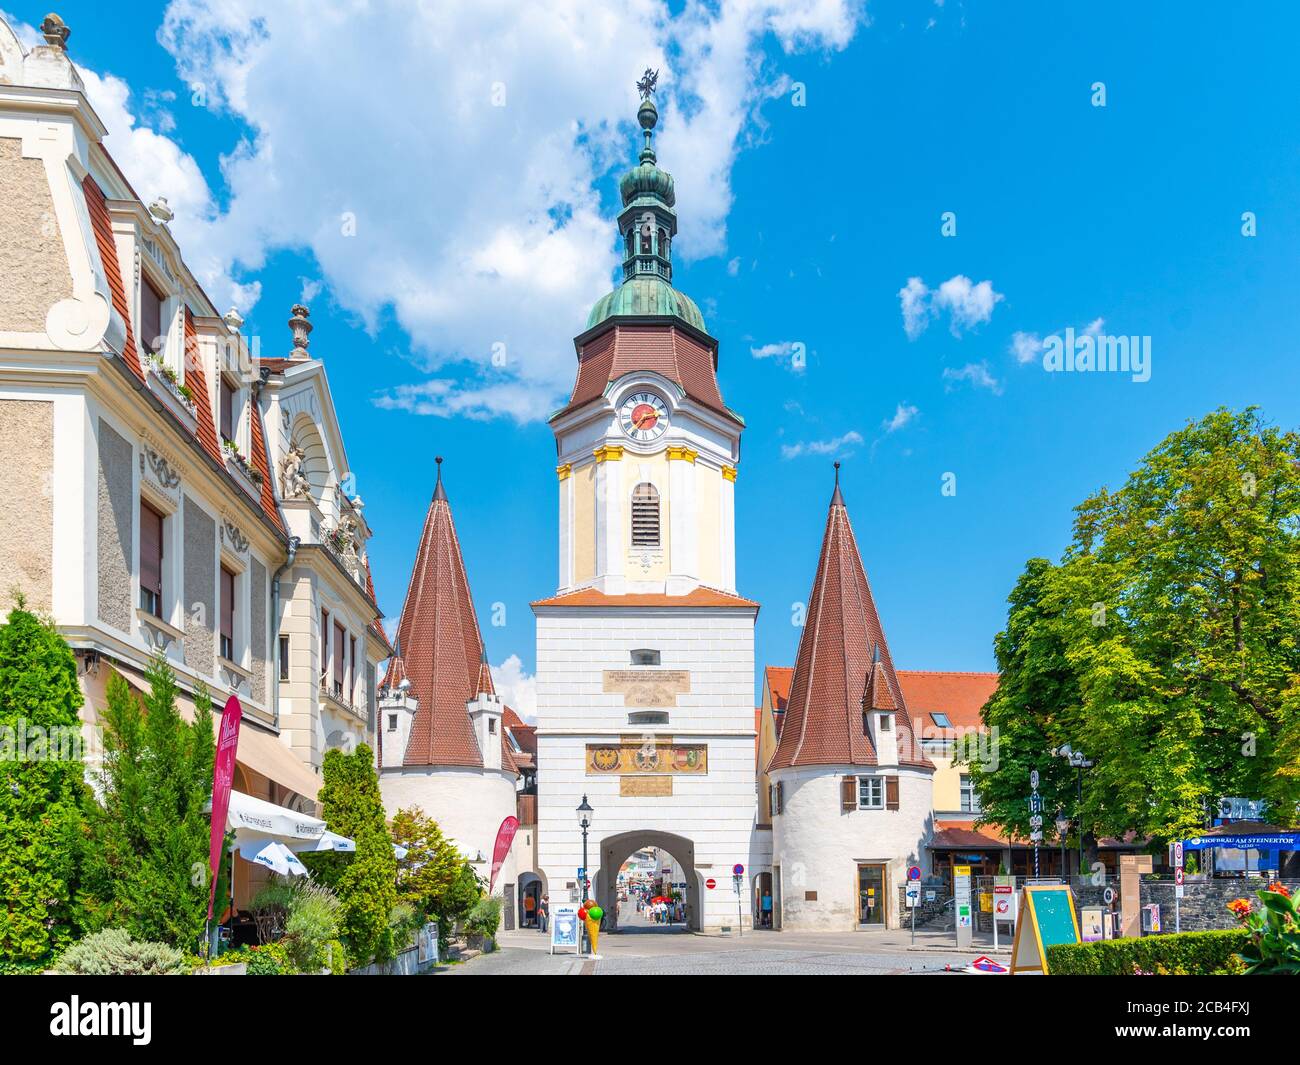 KREMS AN DER DONAU, AUSTRIA - JULY 01, 2019: Steiner Gate, German: Steinertor. Baroque entrance gate of Krems an der Donau city in Wachau Valley, Austria. Stock Photo